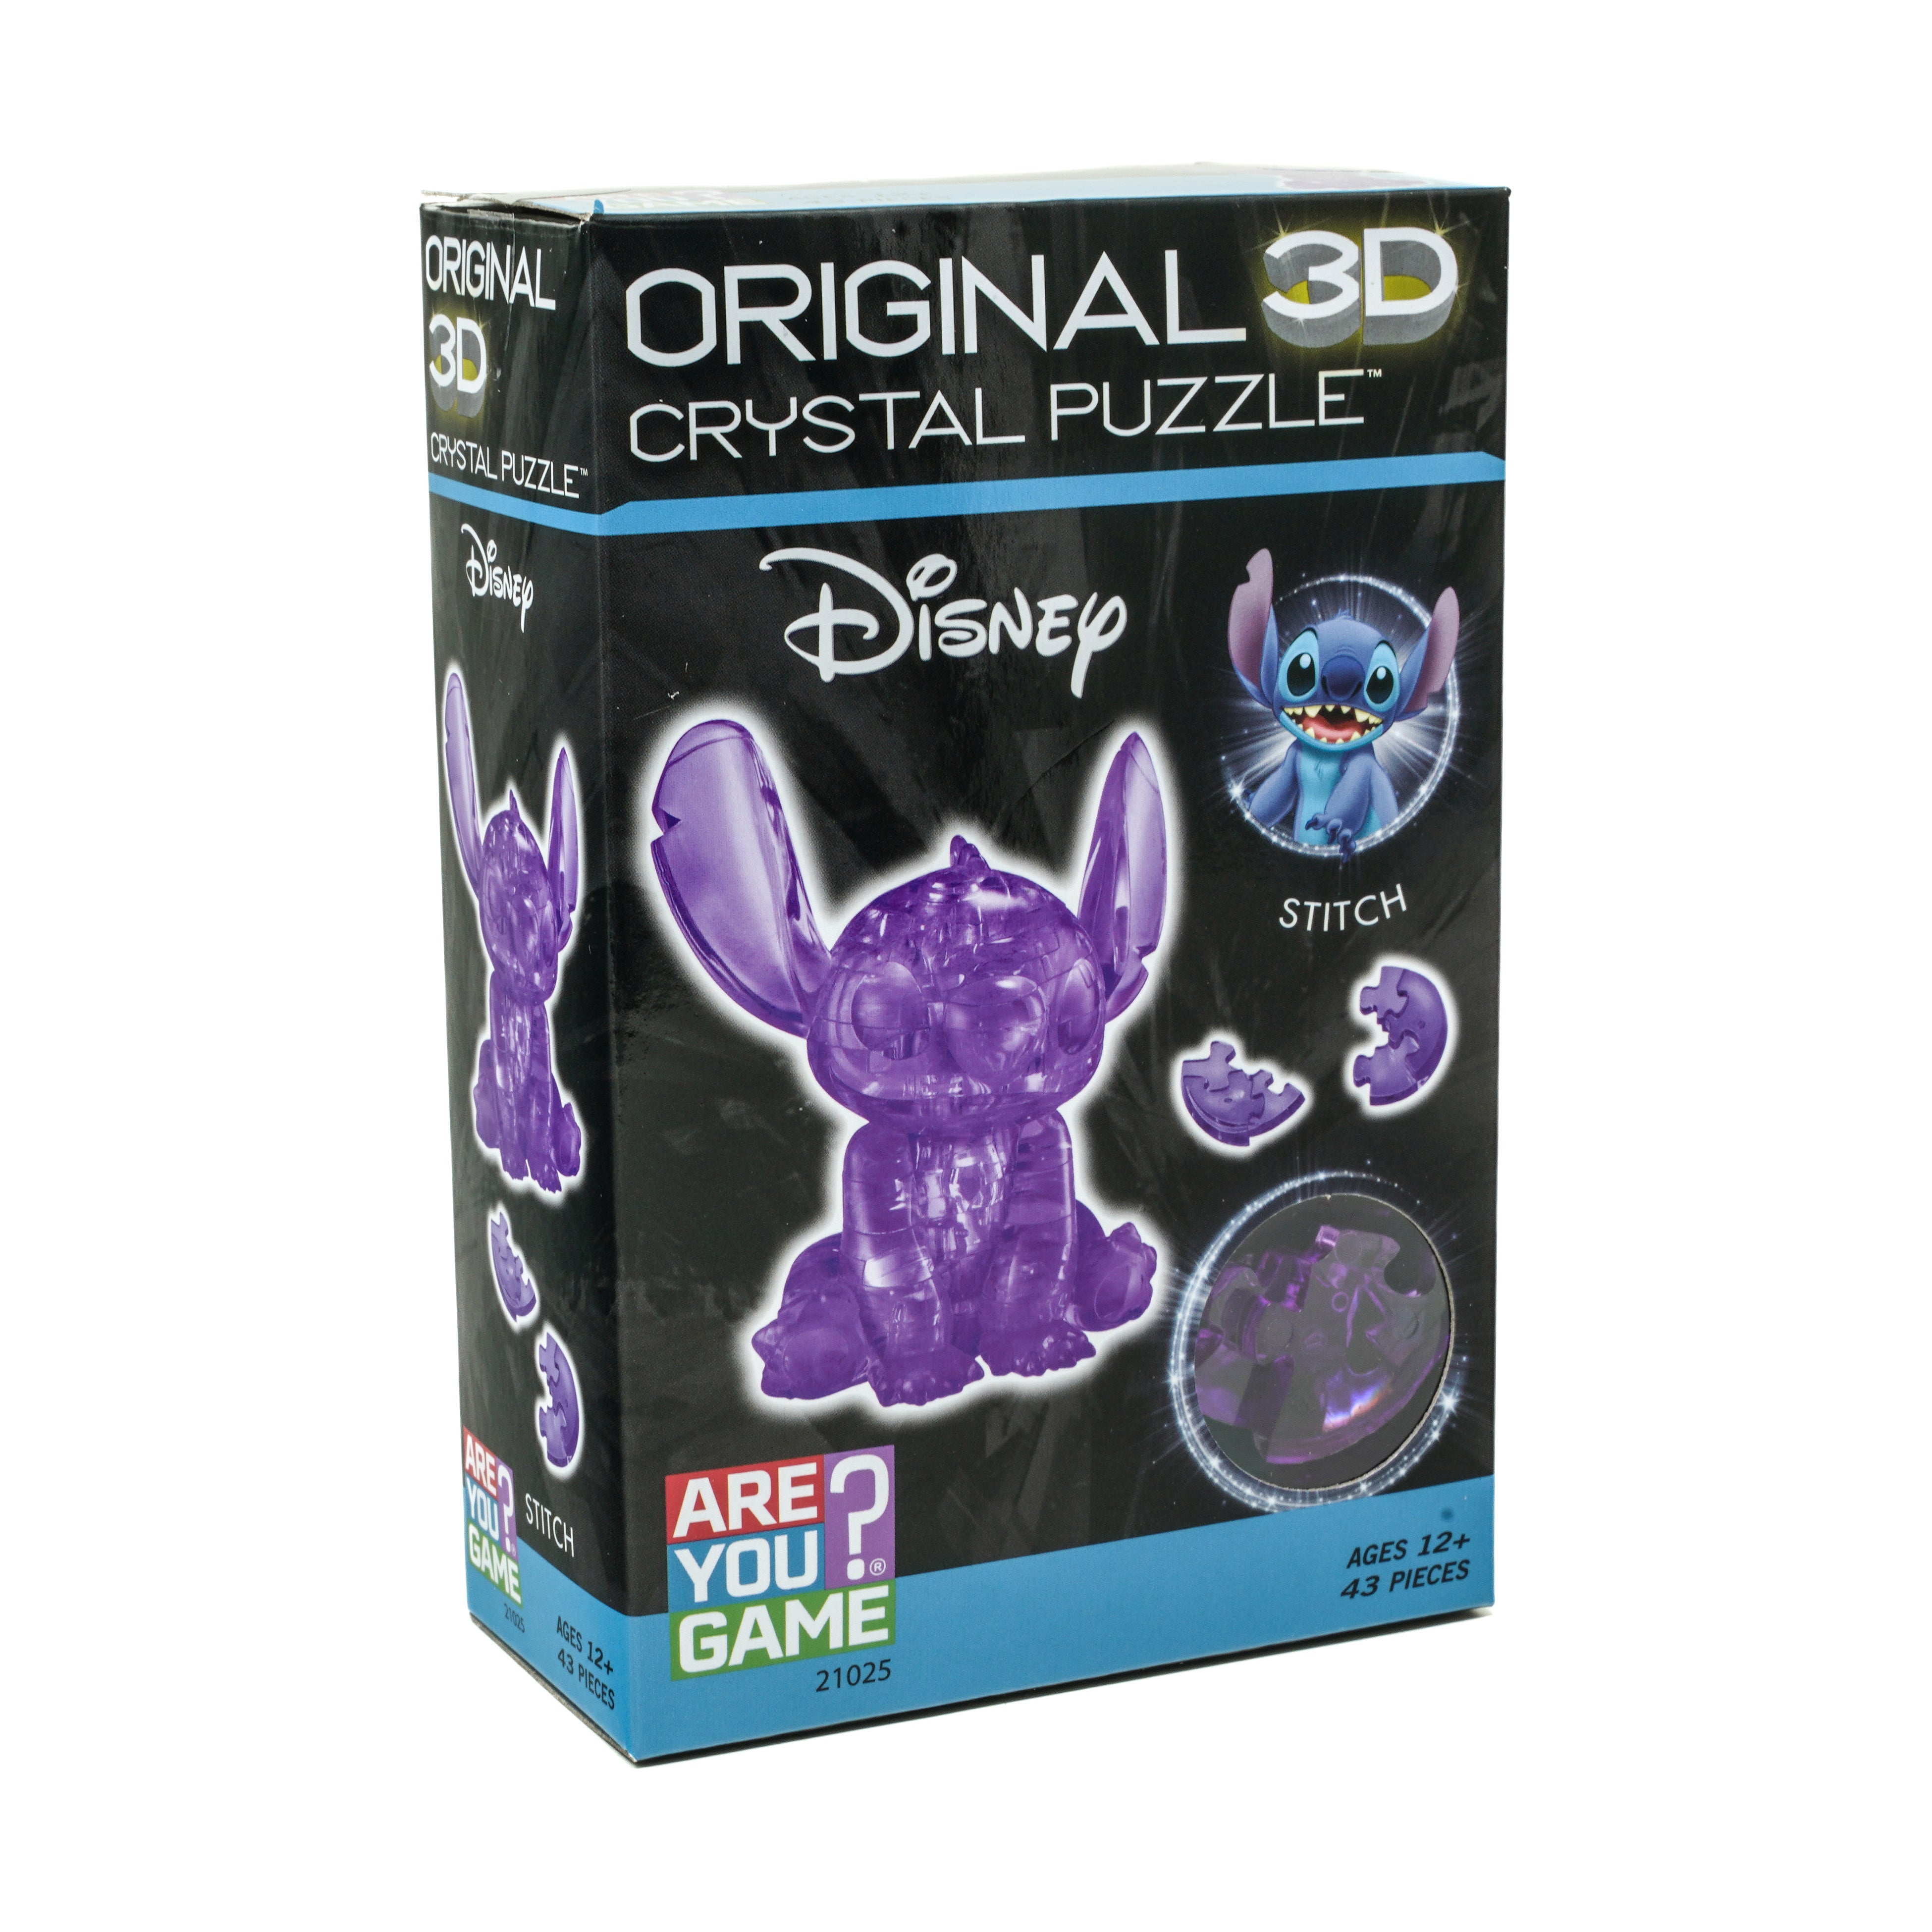 3D Crystal Puzzle - Disney Stitch (Purple): 43 Pcs